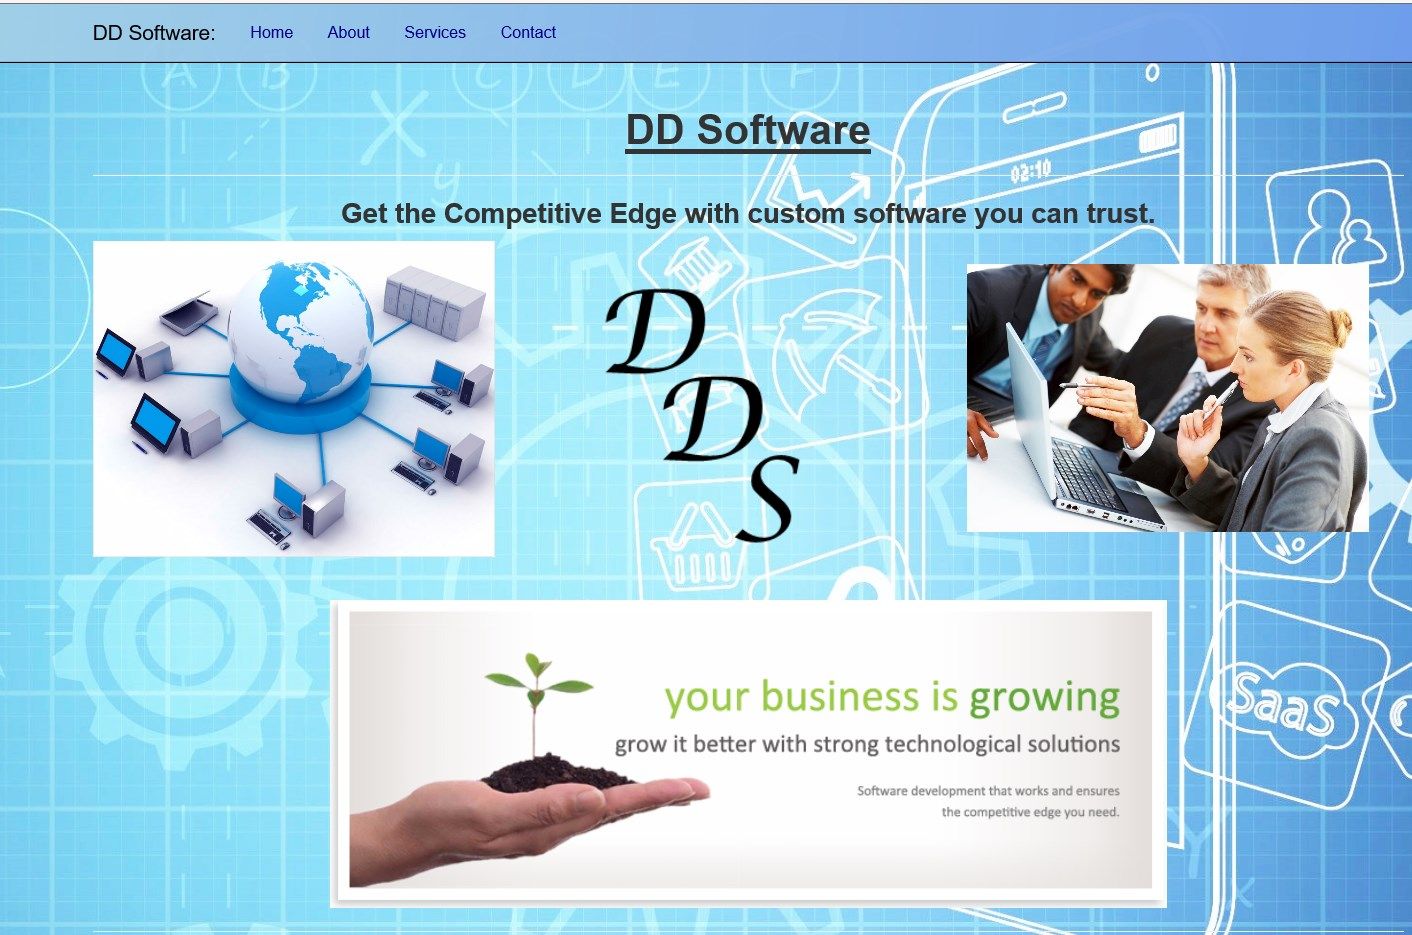 ddSoftware